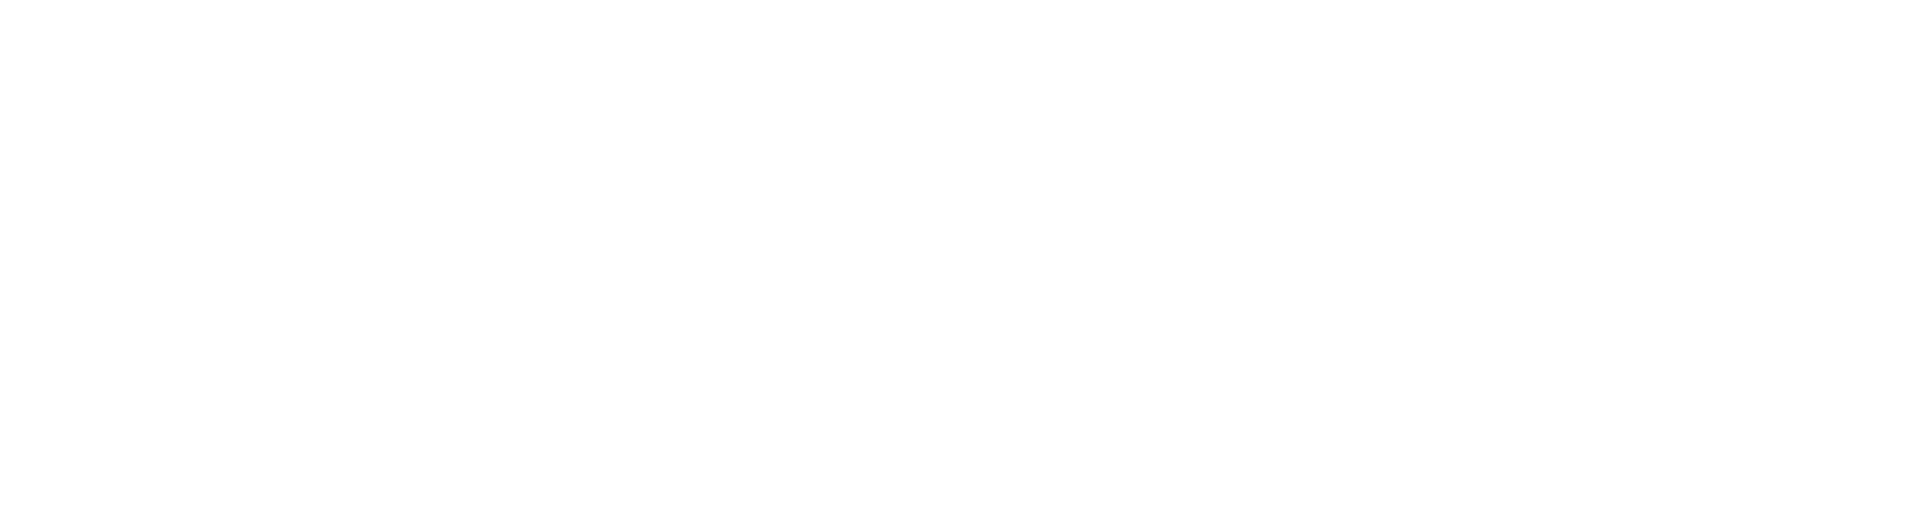 Stowsafe fulfilment white logo